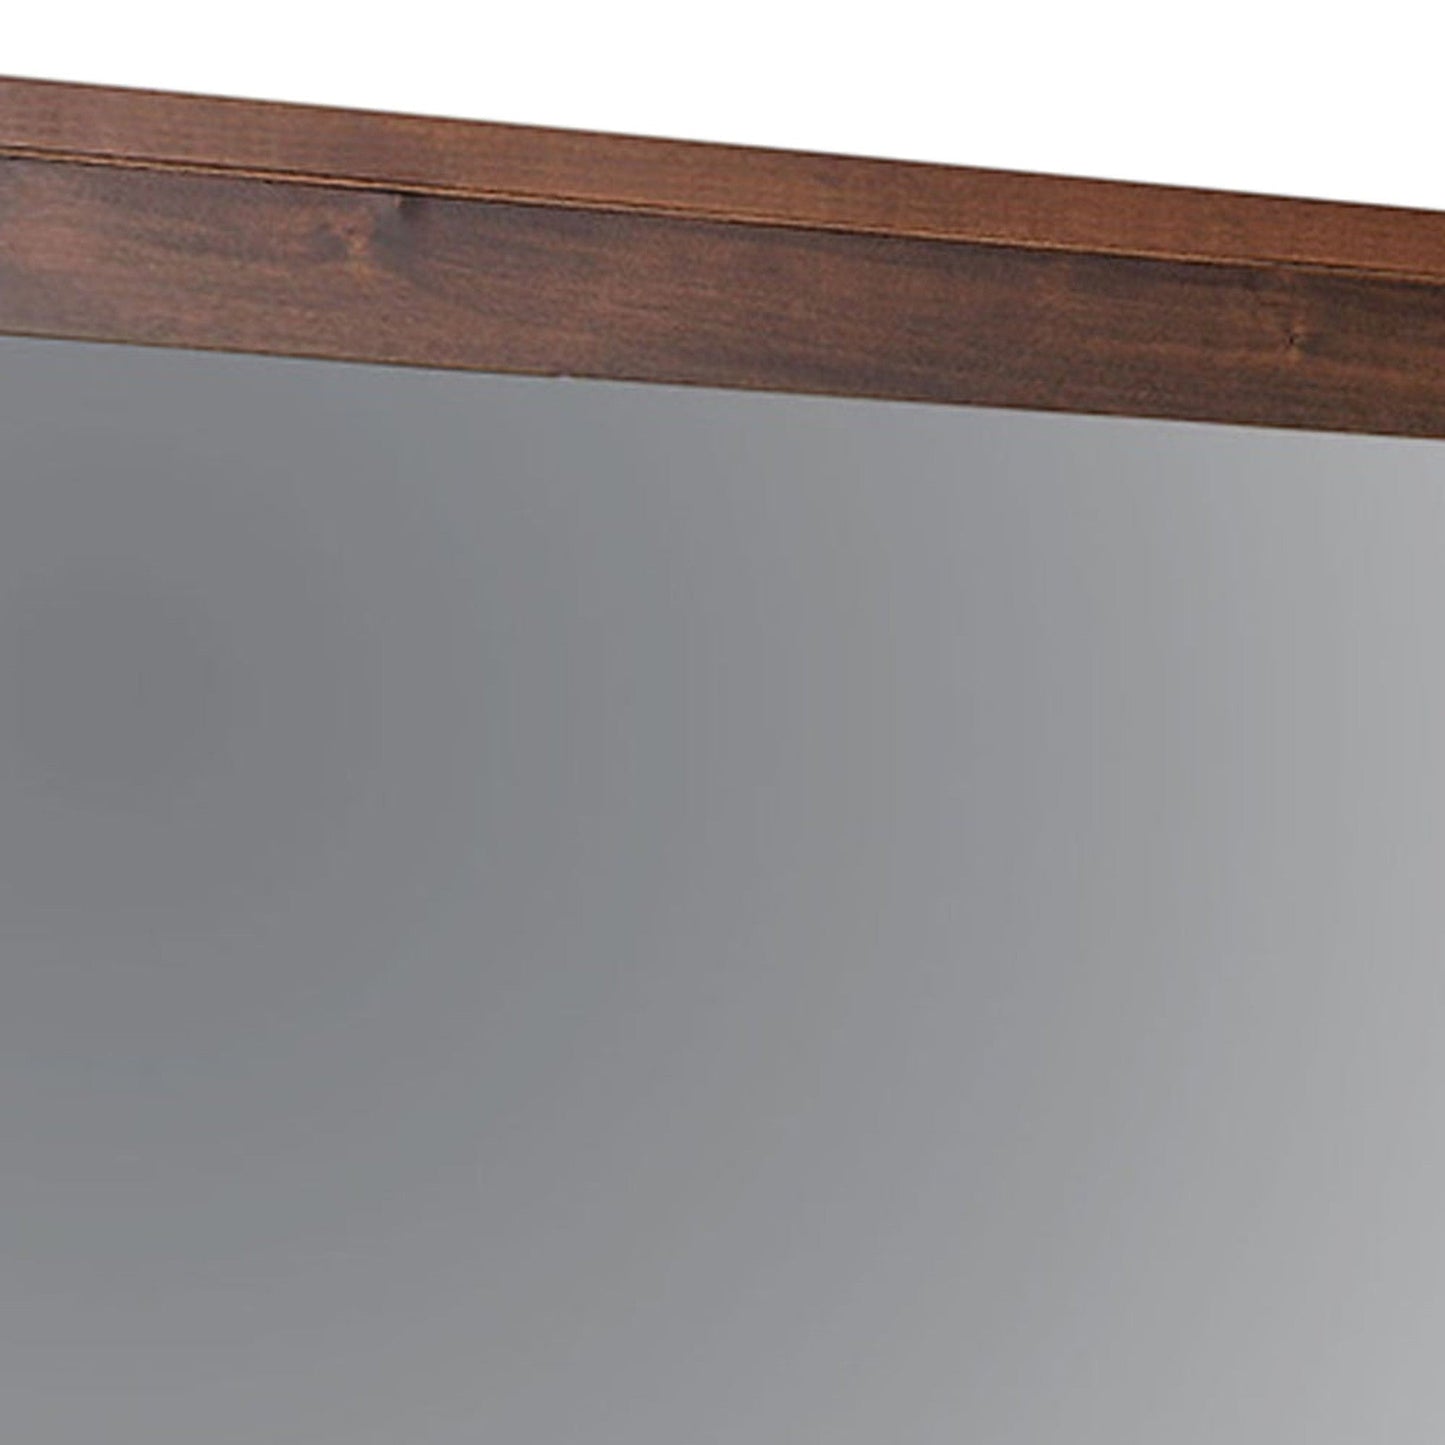 Benzara Brown Rectangular Wooden Frame Mirror With Mounting Hardwares